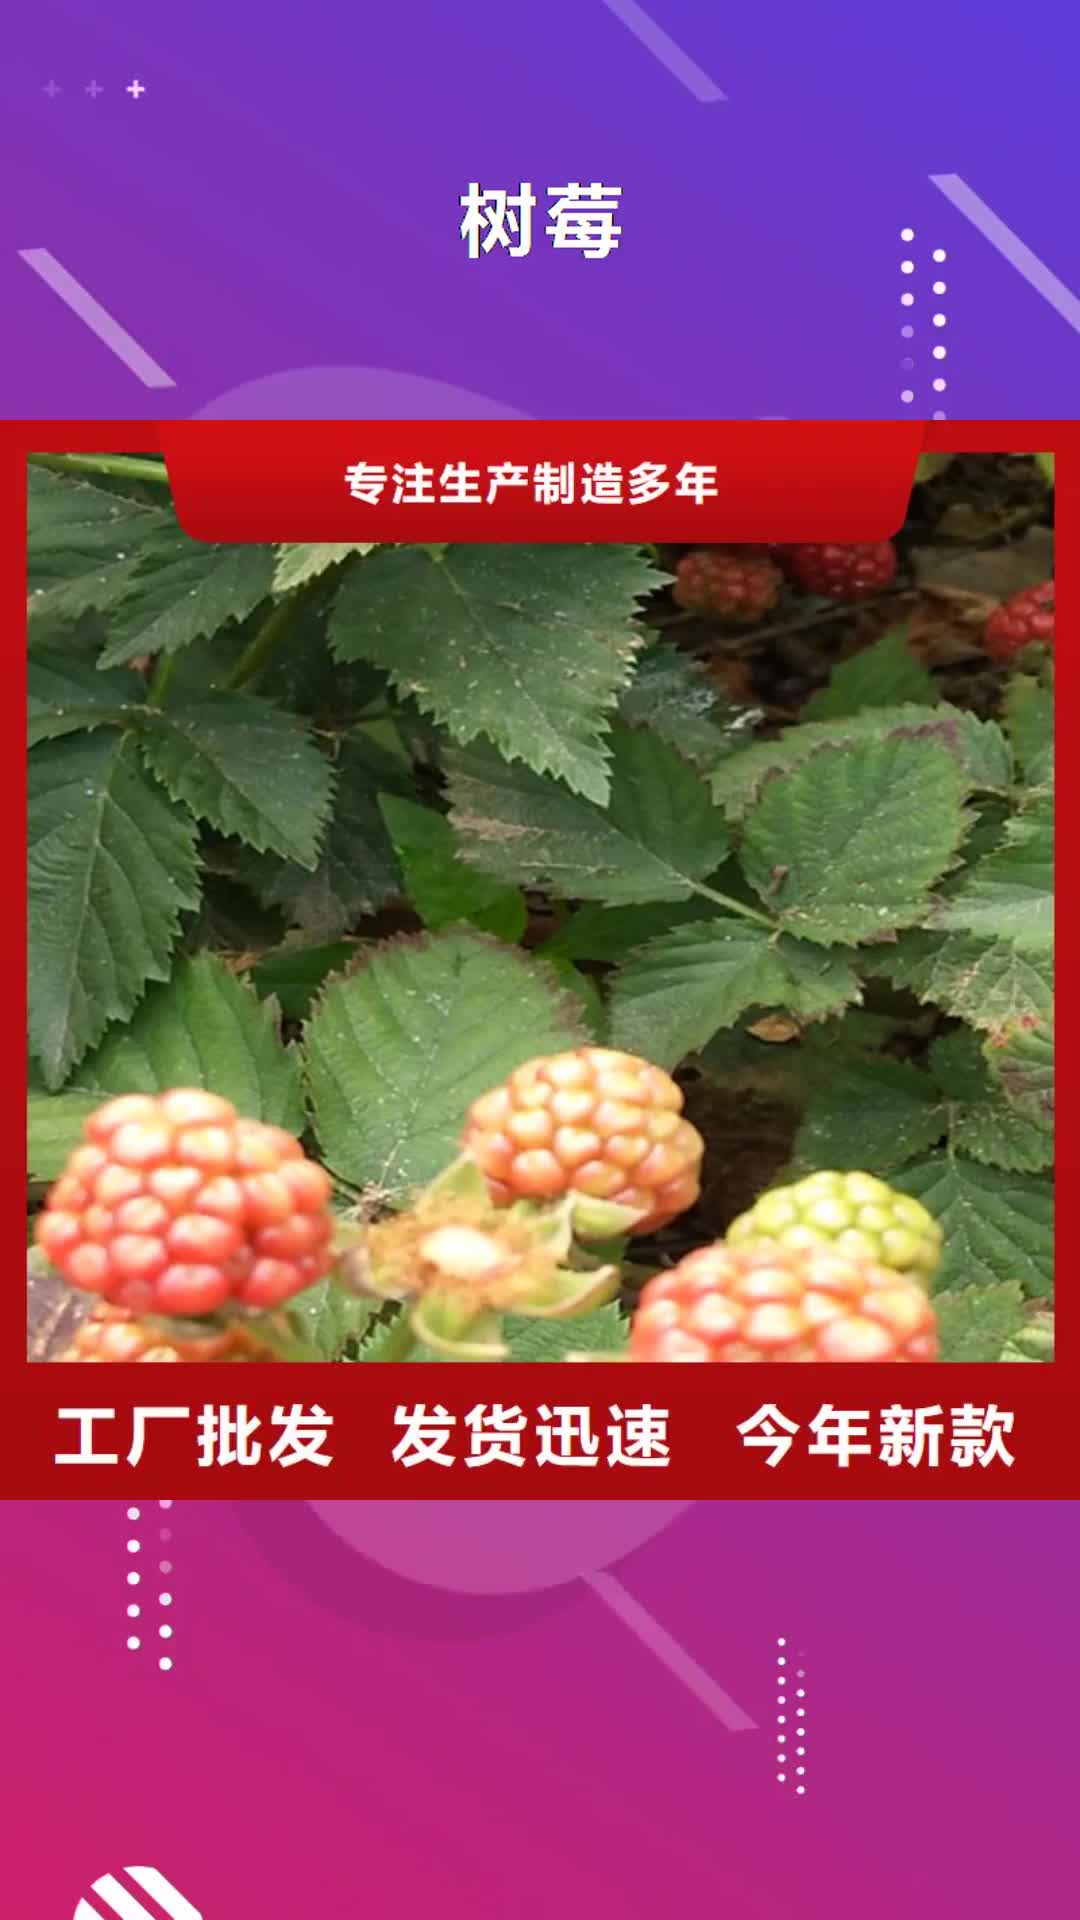 【连云港 树莓,桃树苗厂家工艺先进】